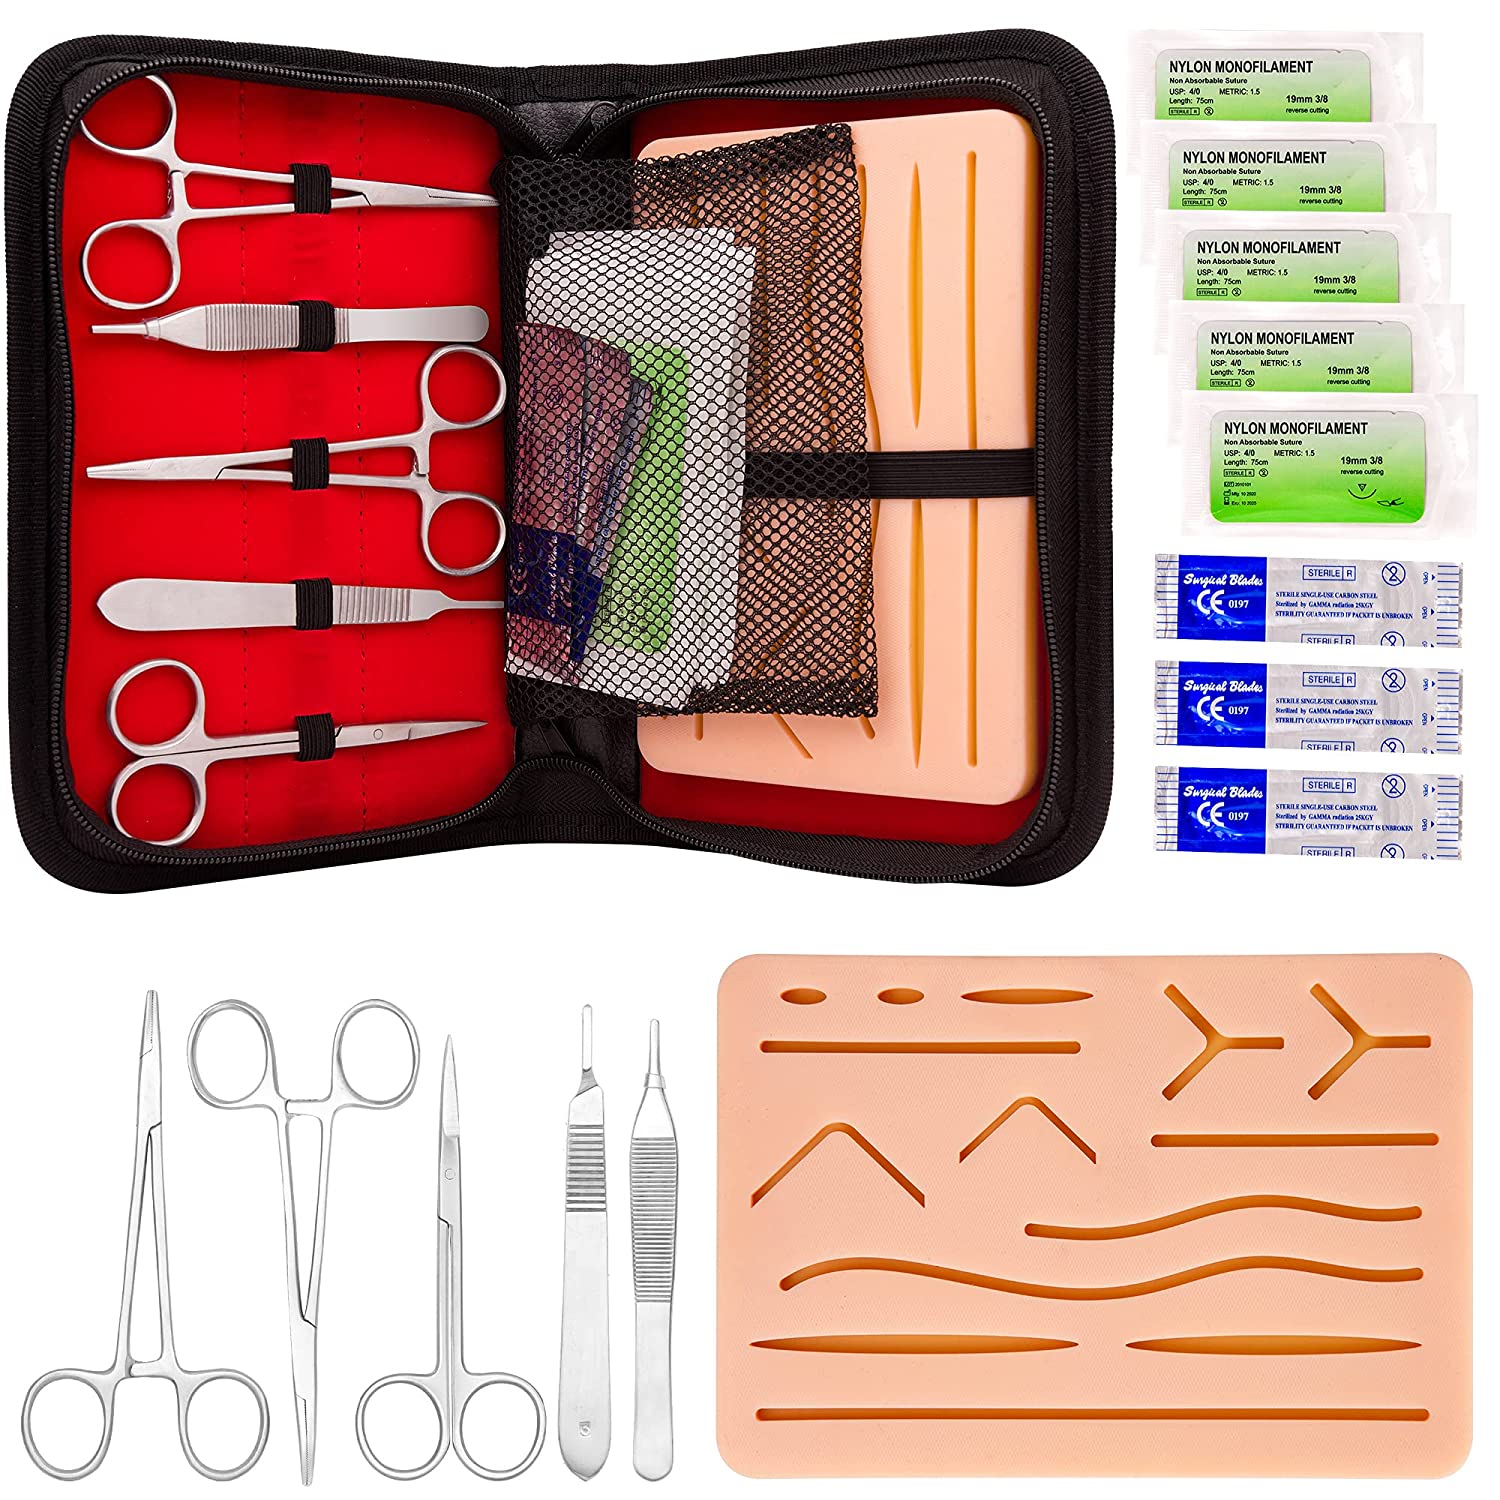 Vente de kit d'entraînement à la suture R10030 Erler Zimmer à 396,00 €